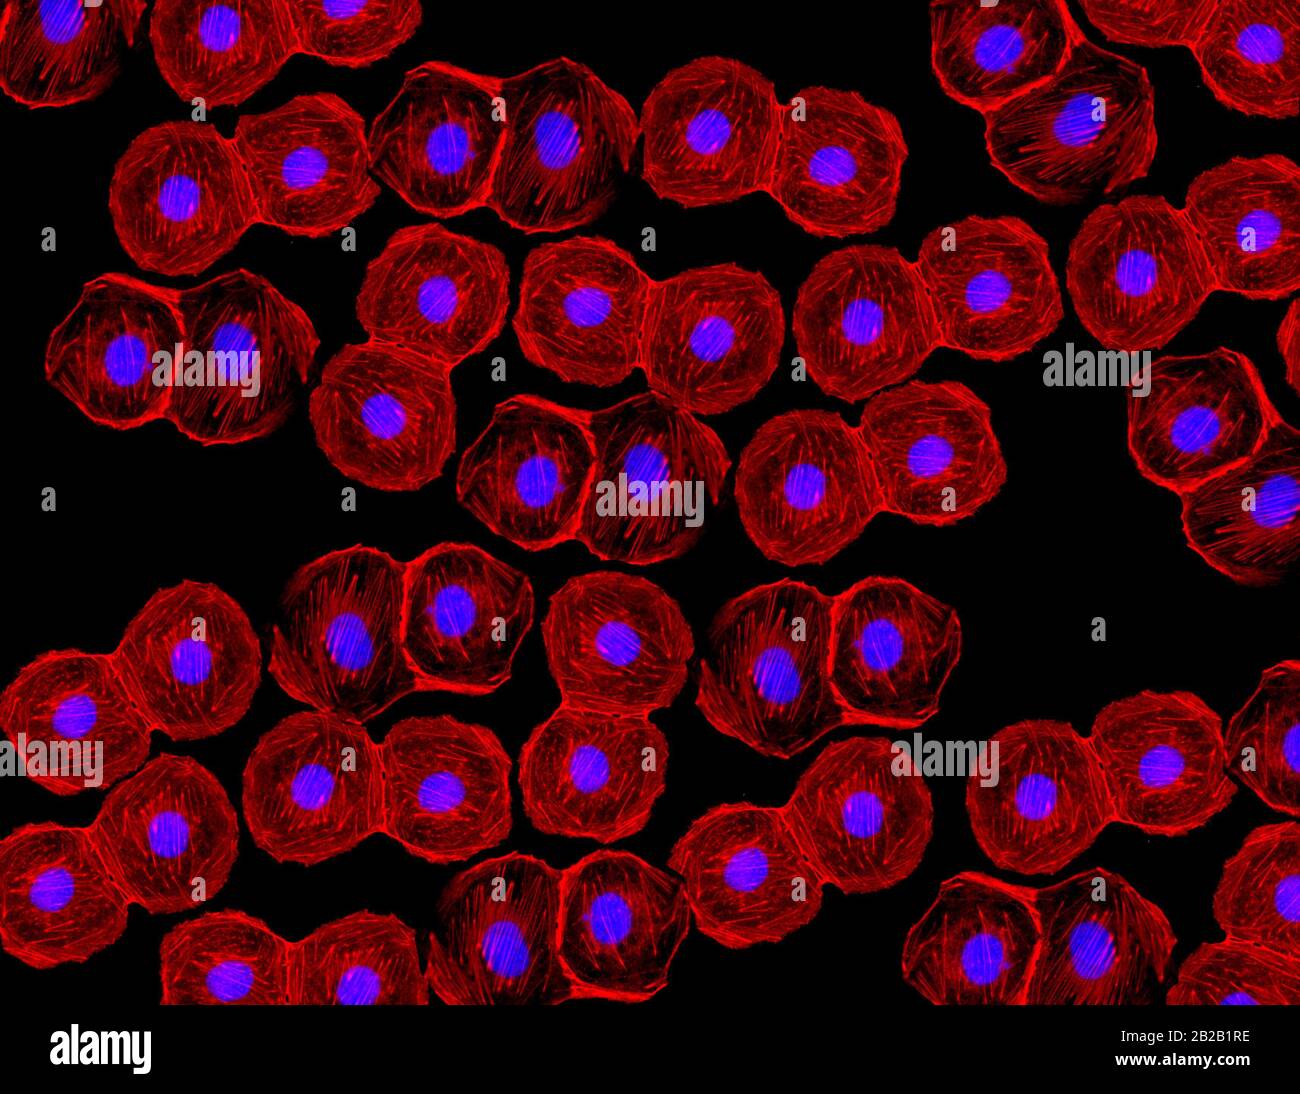 Konfokale mikroskopie -Fotos und -Bildmaterial in hoher Auflösung – Alamy